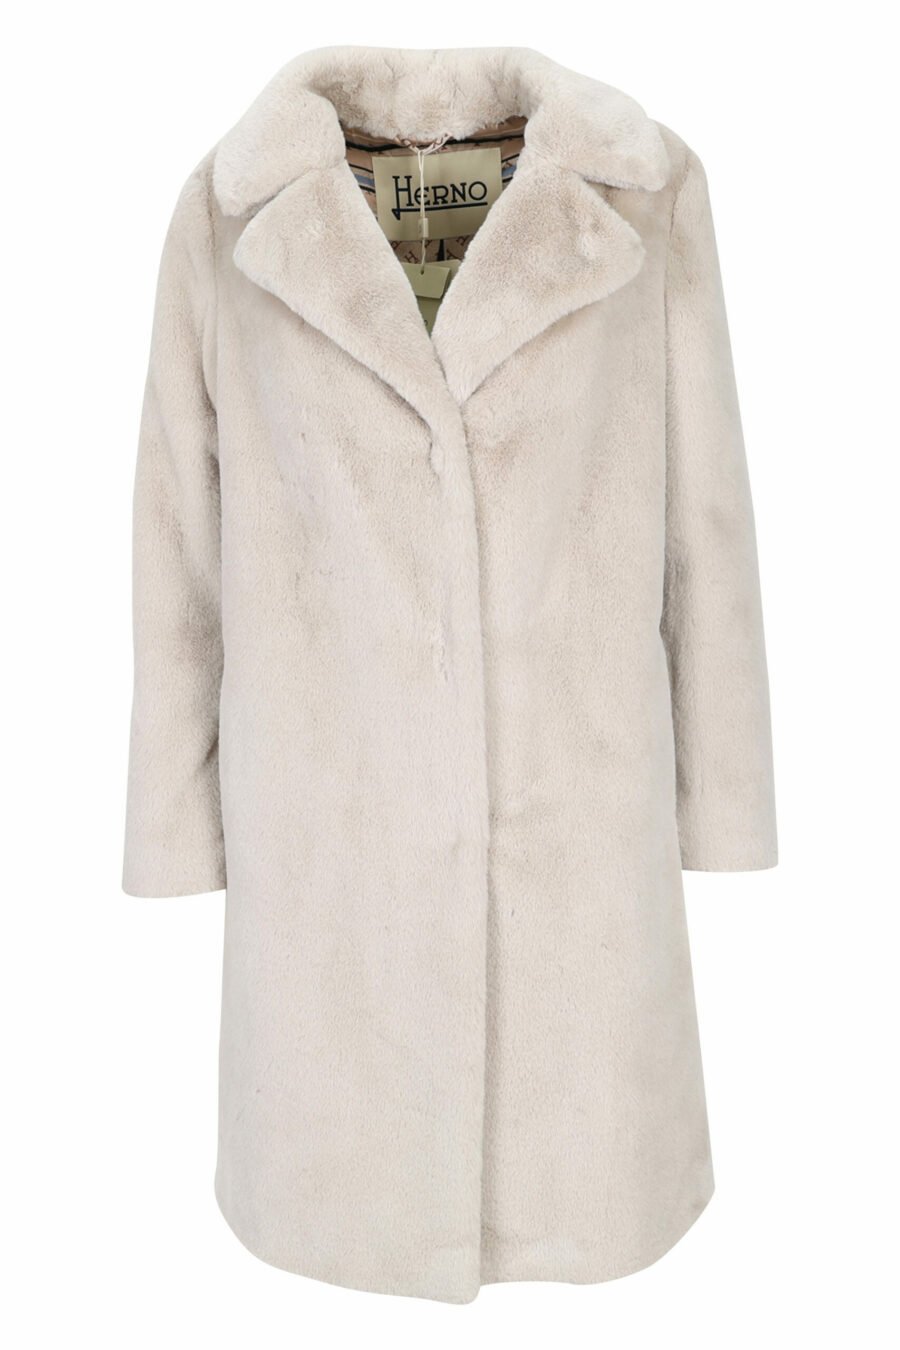 Abrigo blanco con pelo sintético efecto castor y forro interior monograma - 8055721649603 scaled